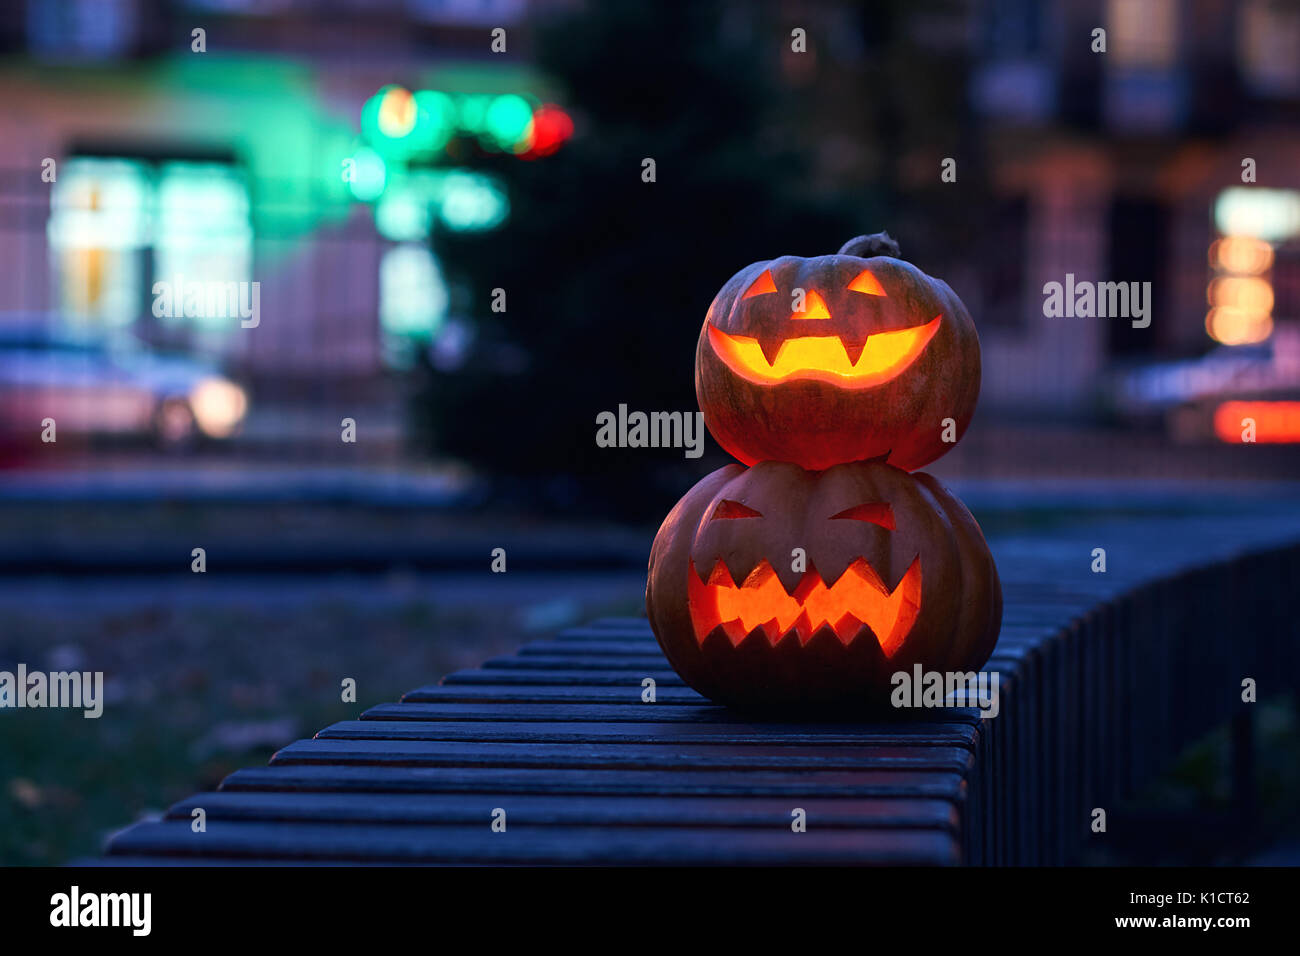 La magie d'Halloween pumpkins at night Banque D'Images